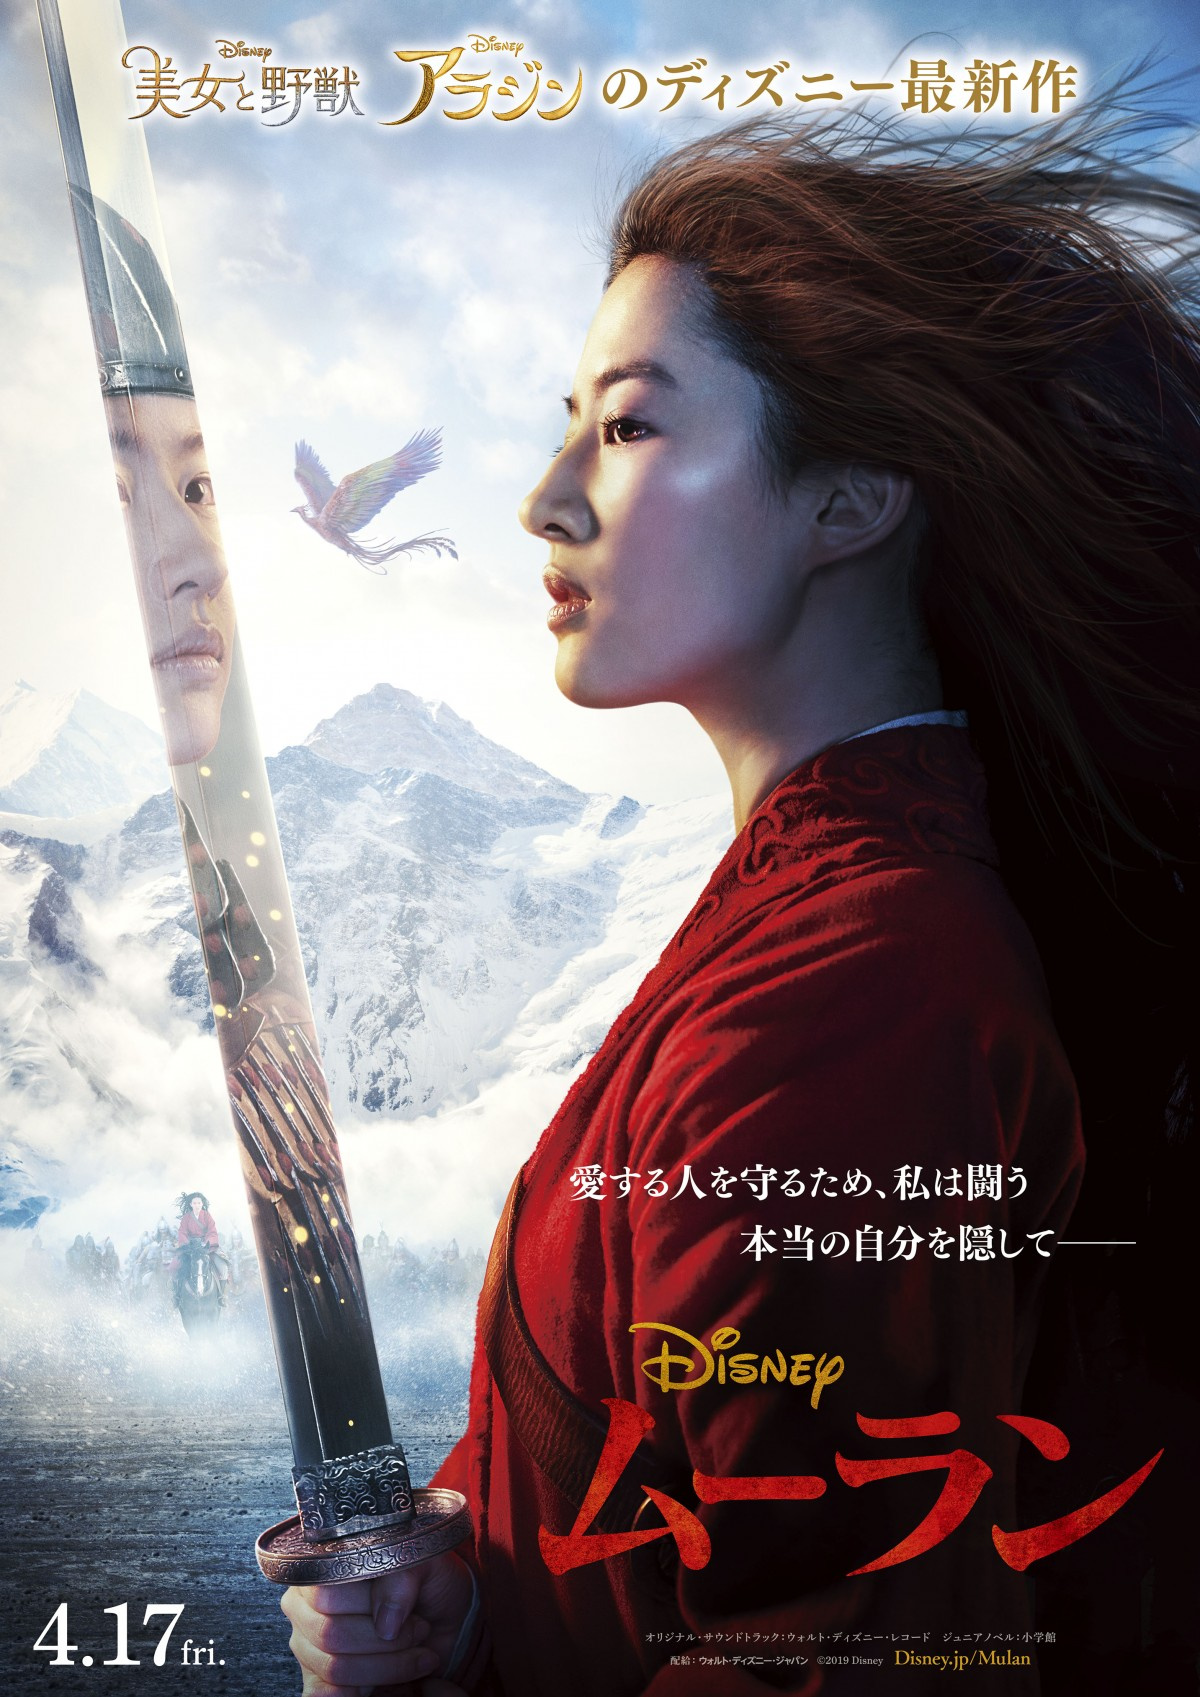 ディズニー 史上最強 のヒロインを描く実写映画 ムーラン 来年4 17日本公開 Oricon News